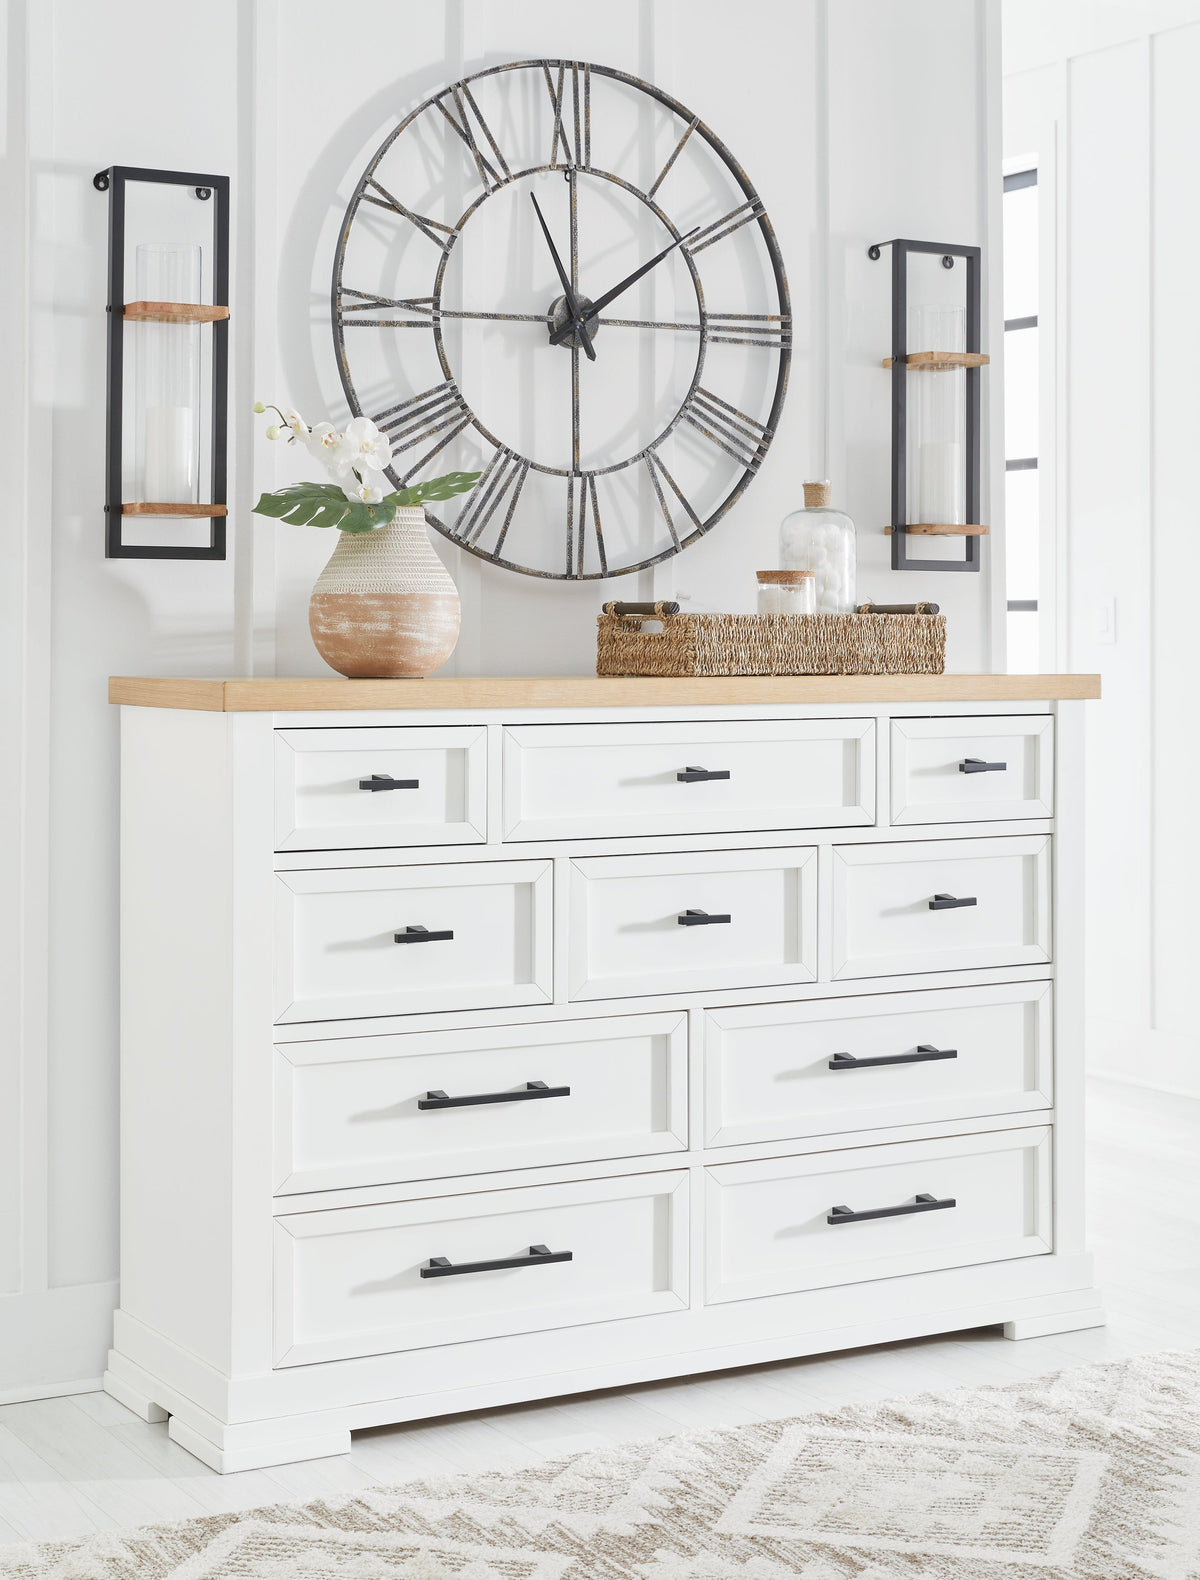 Ashbryn White/Natural Dresser - B844-31 - Luna Furniture